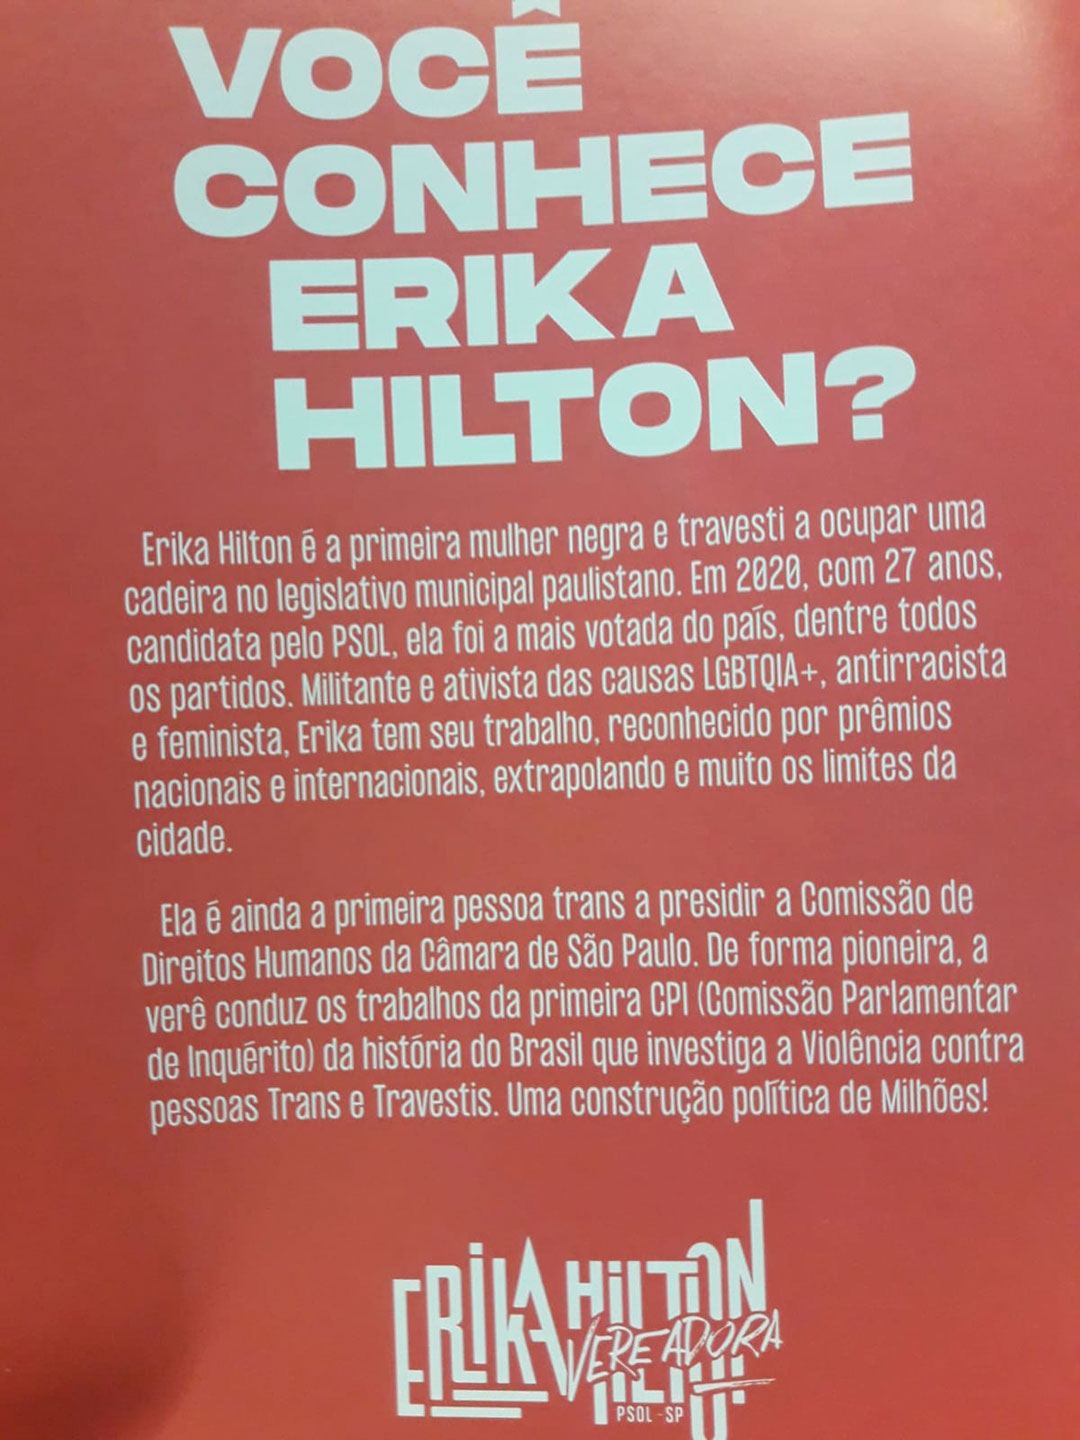 Erika Hilton es una legisladora brasileña que pide que las personas trans puedan tener estímulos para estudiar y que sea reconocida su identidad